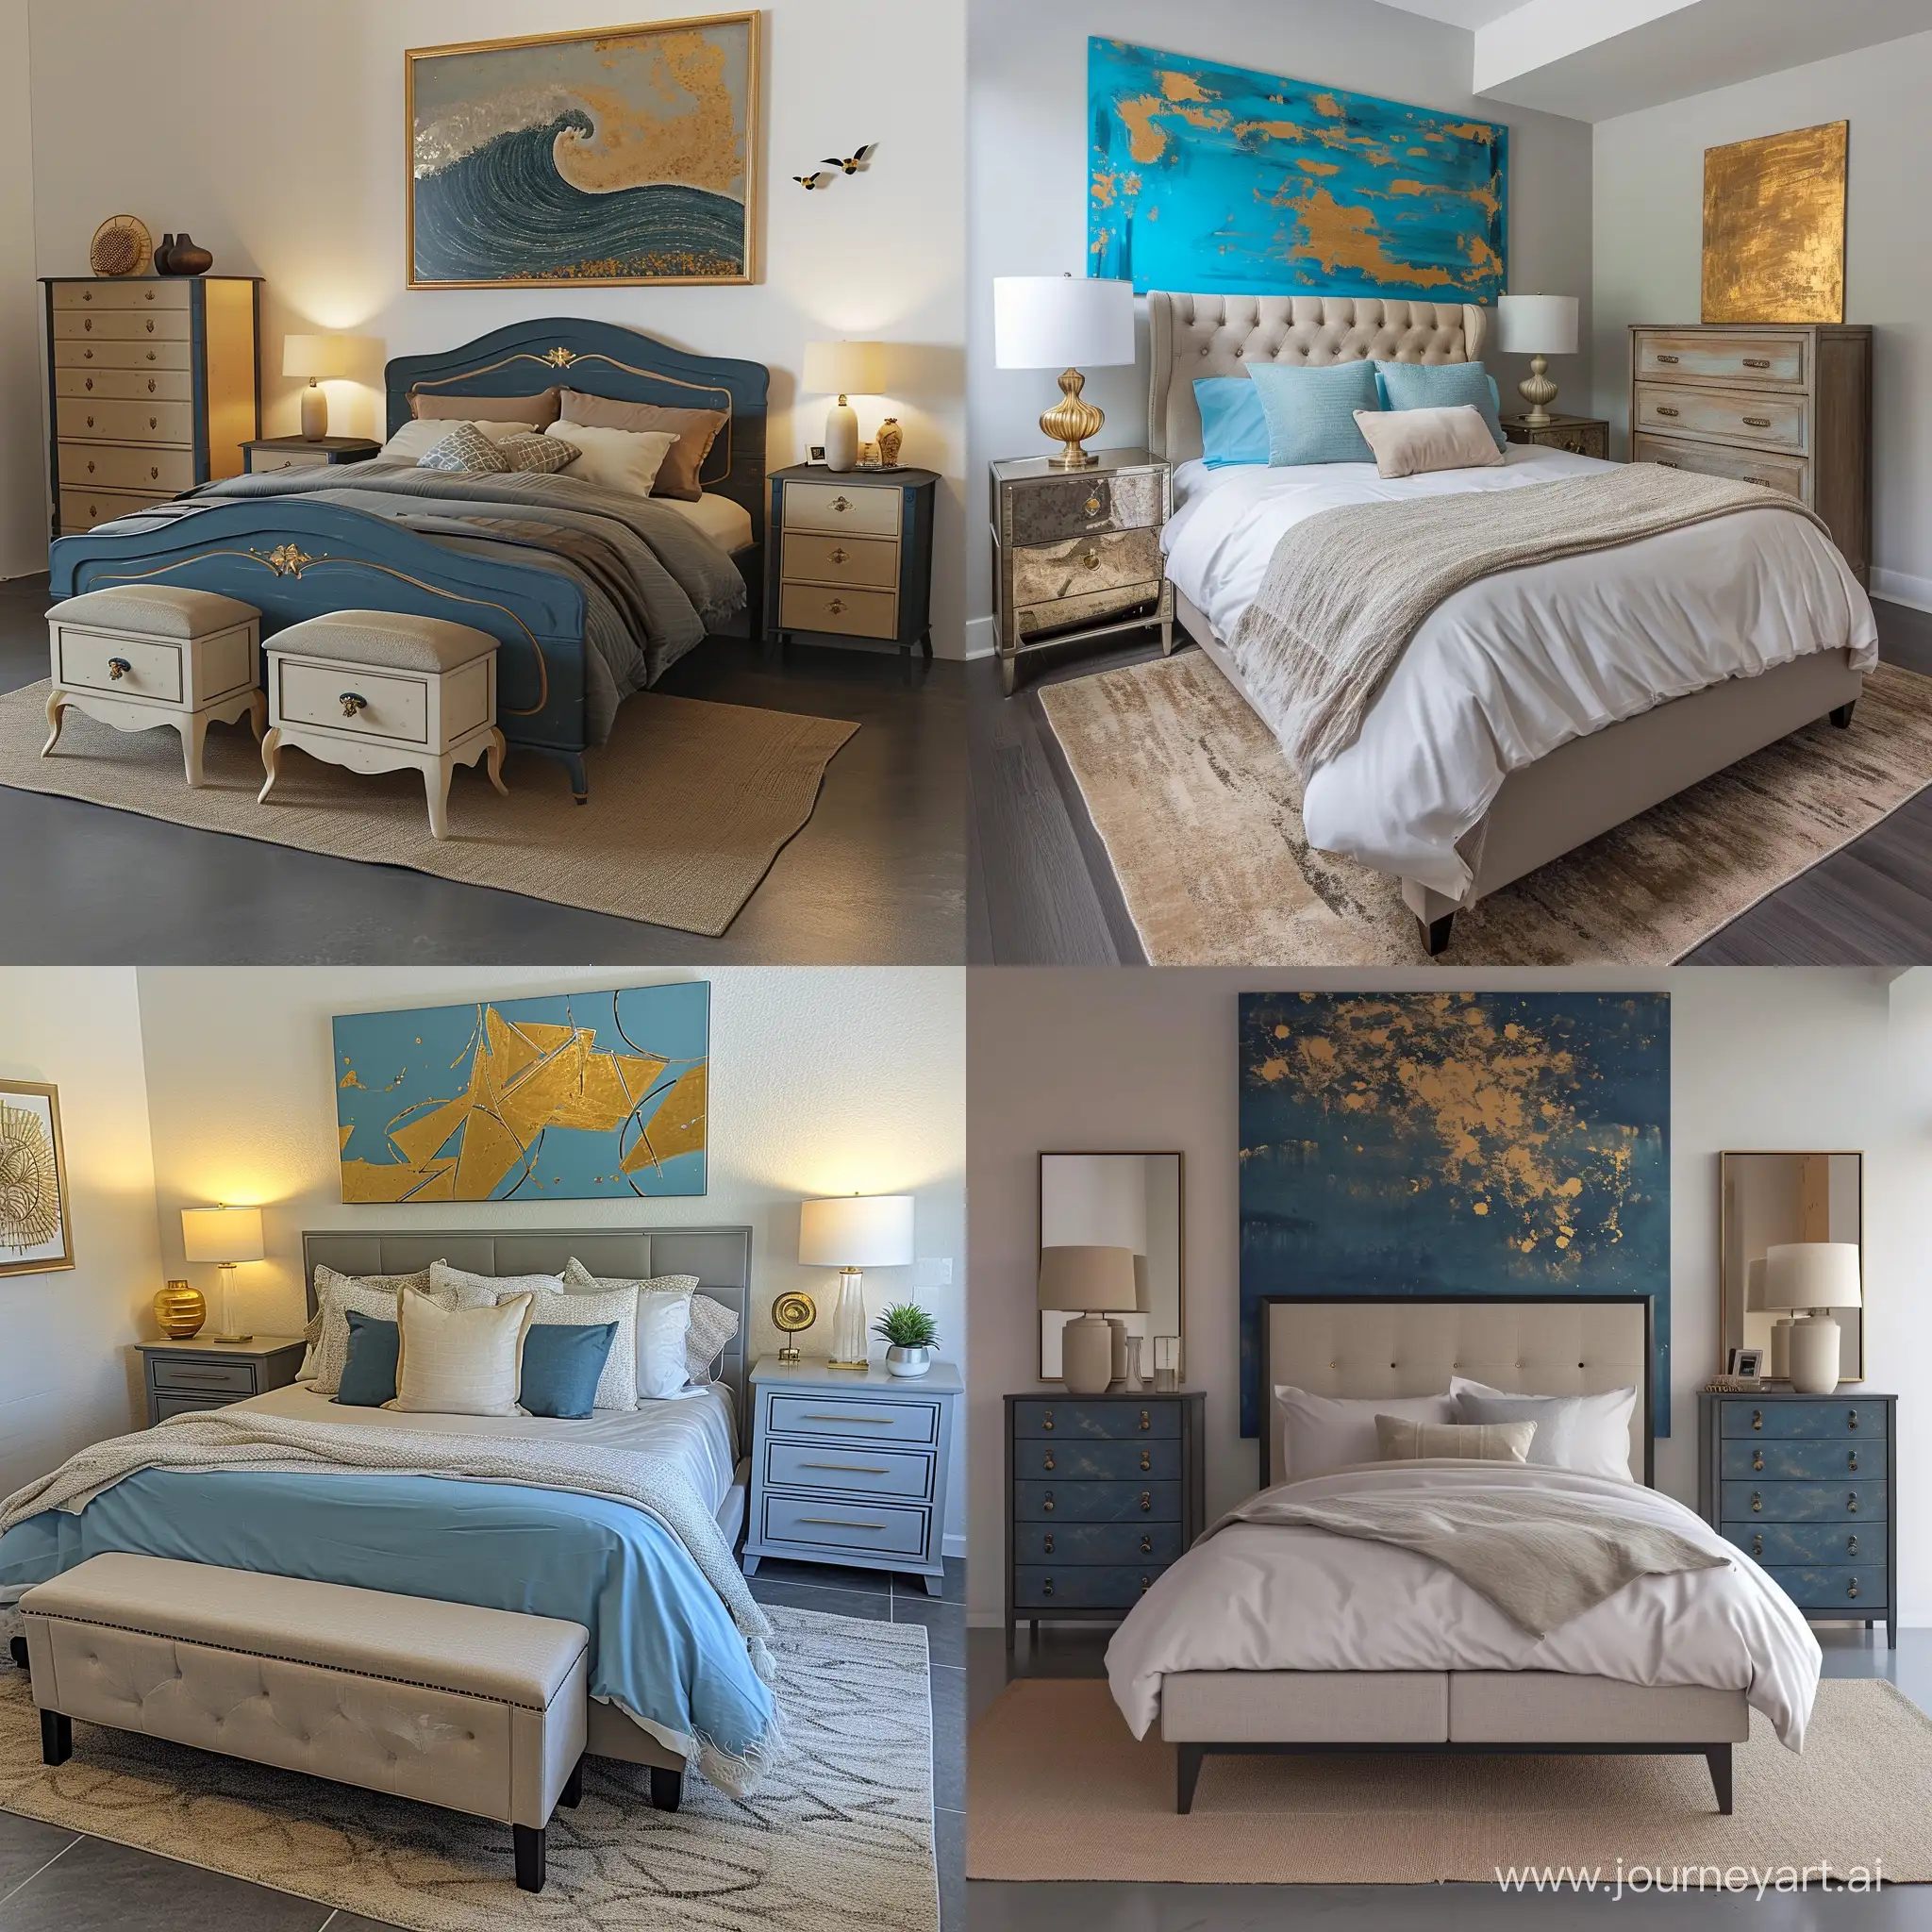 camera da letto con letto due comodini  una cassettiera dipinto sopra alla testata del letto  piccoli tappeti beige stile moderno pavimento grigio.  colore dominante medium Blue, dettagli oro